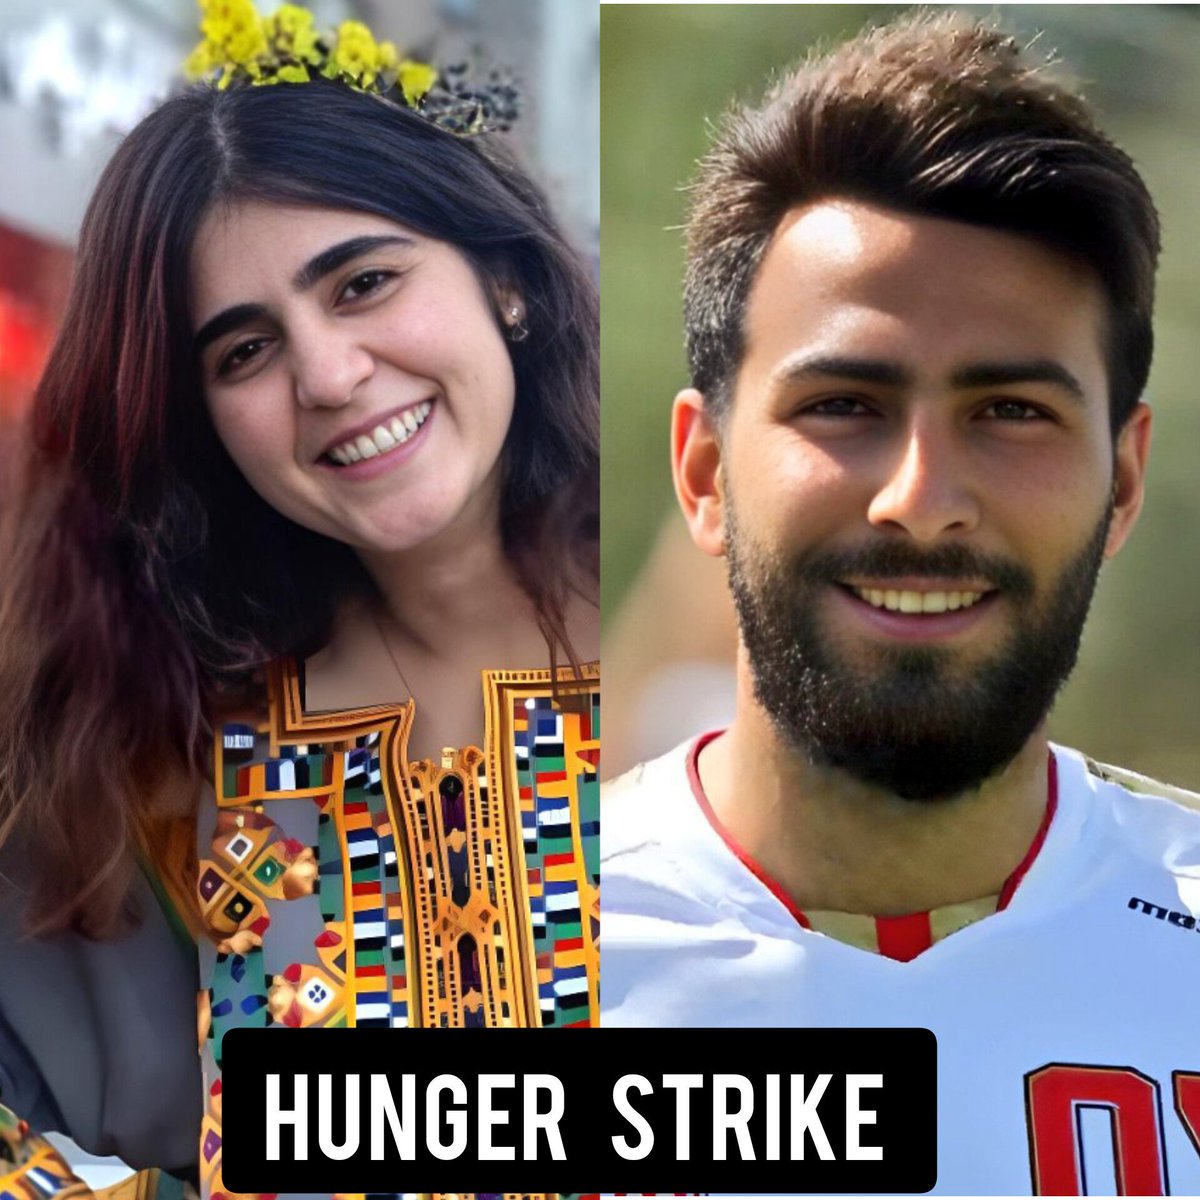 اعتصاب غذا آخرین سلاح زندانی برای 
رسوندن صدای اعتراضش هست. 

صدای #امیرنصر_آزادانی باشیم
صدای #سپیدە_قلیان باشیم

#زن‌_زندگی_آزادی